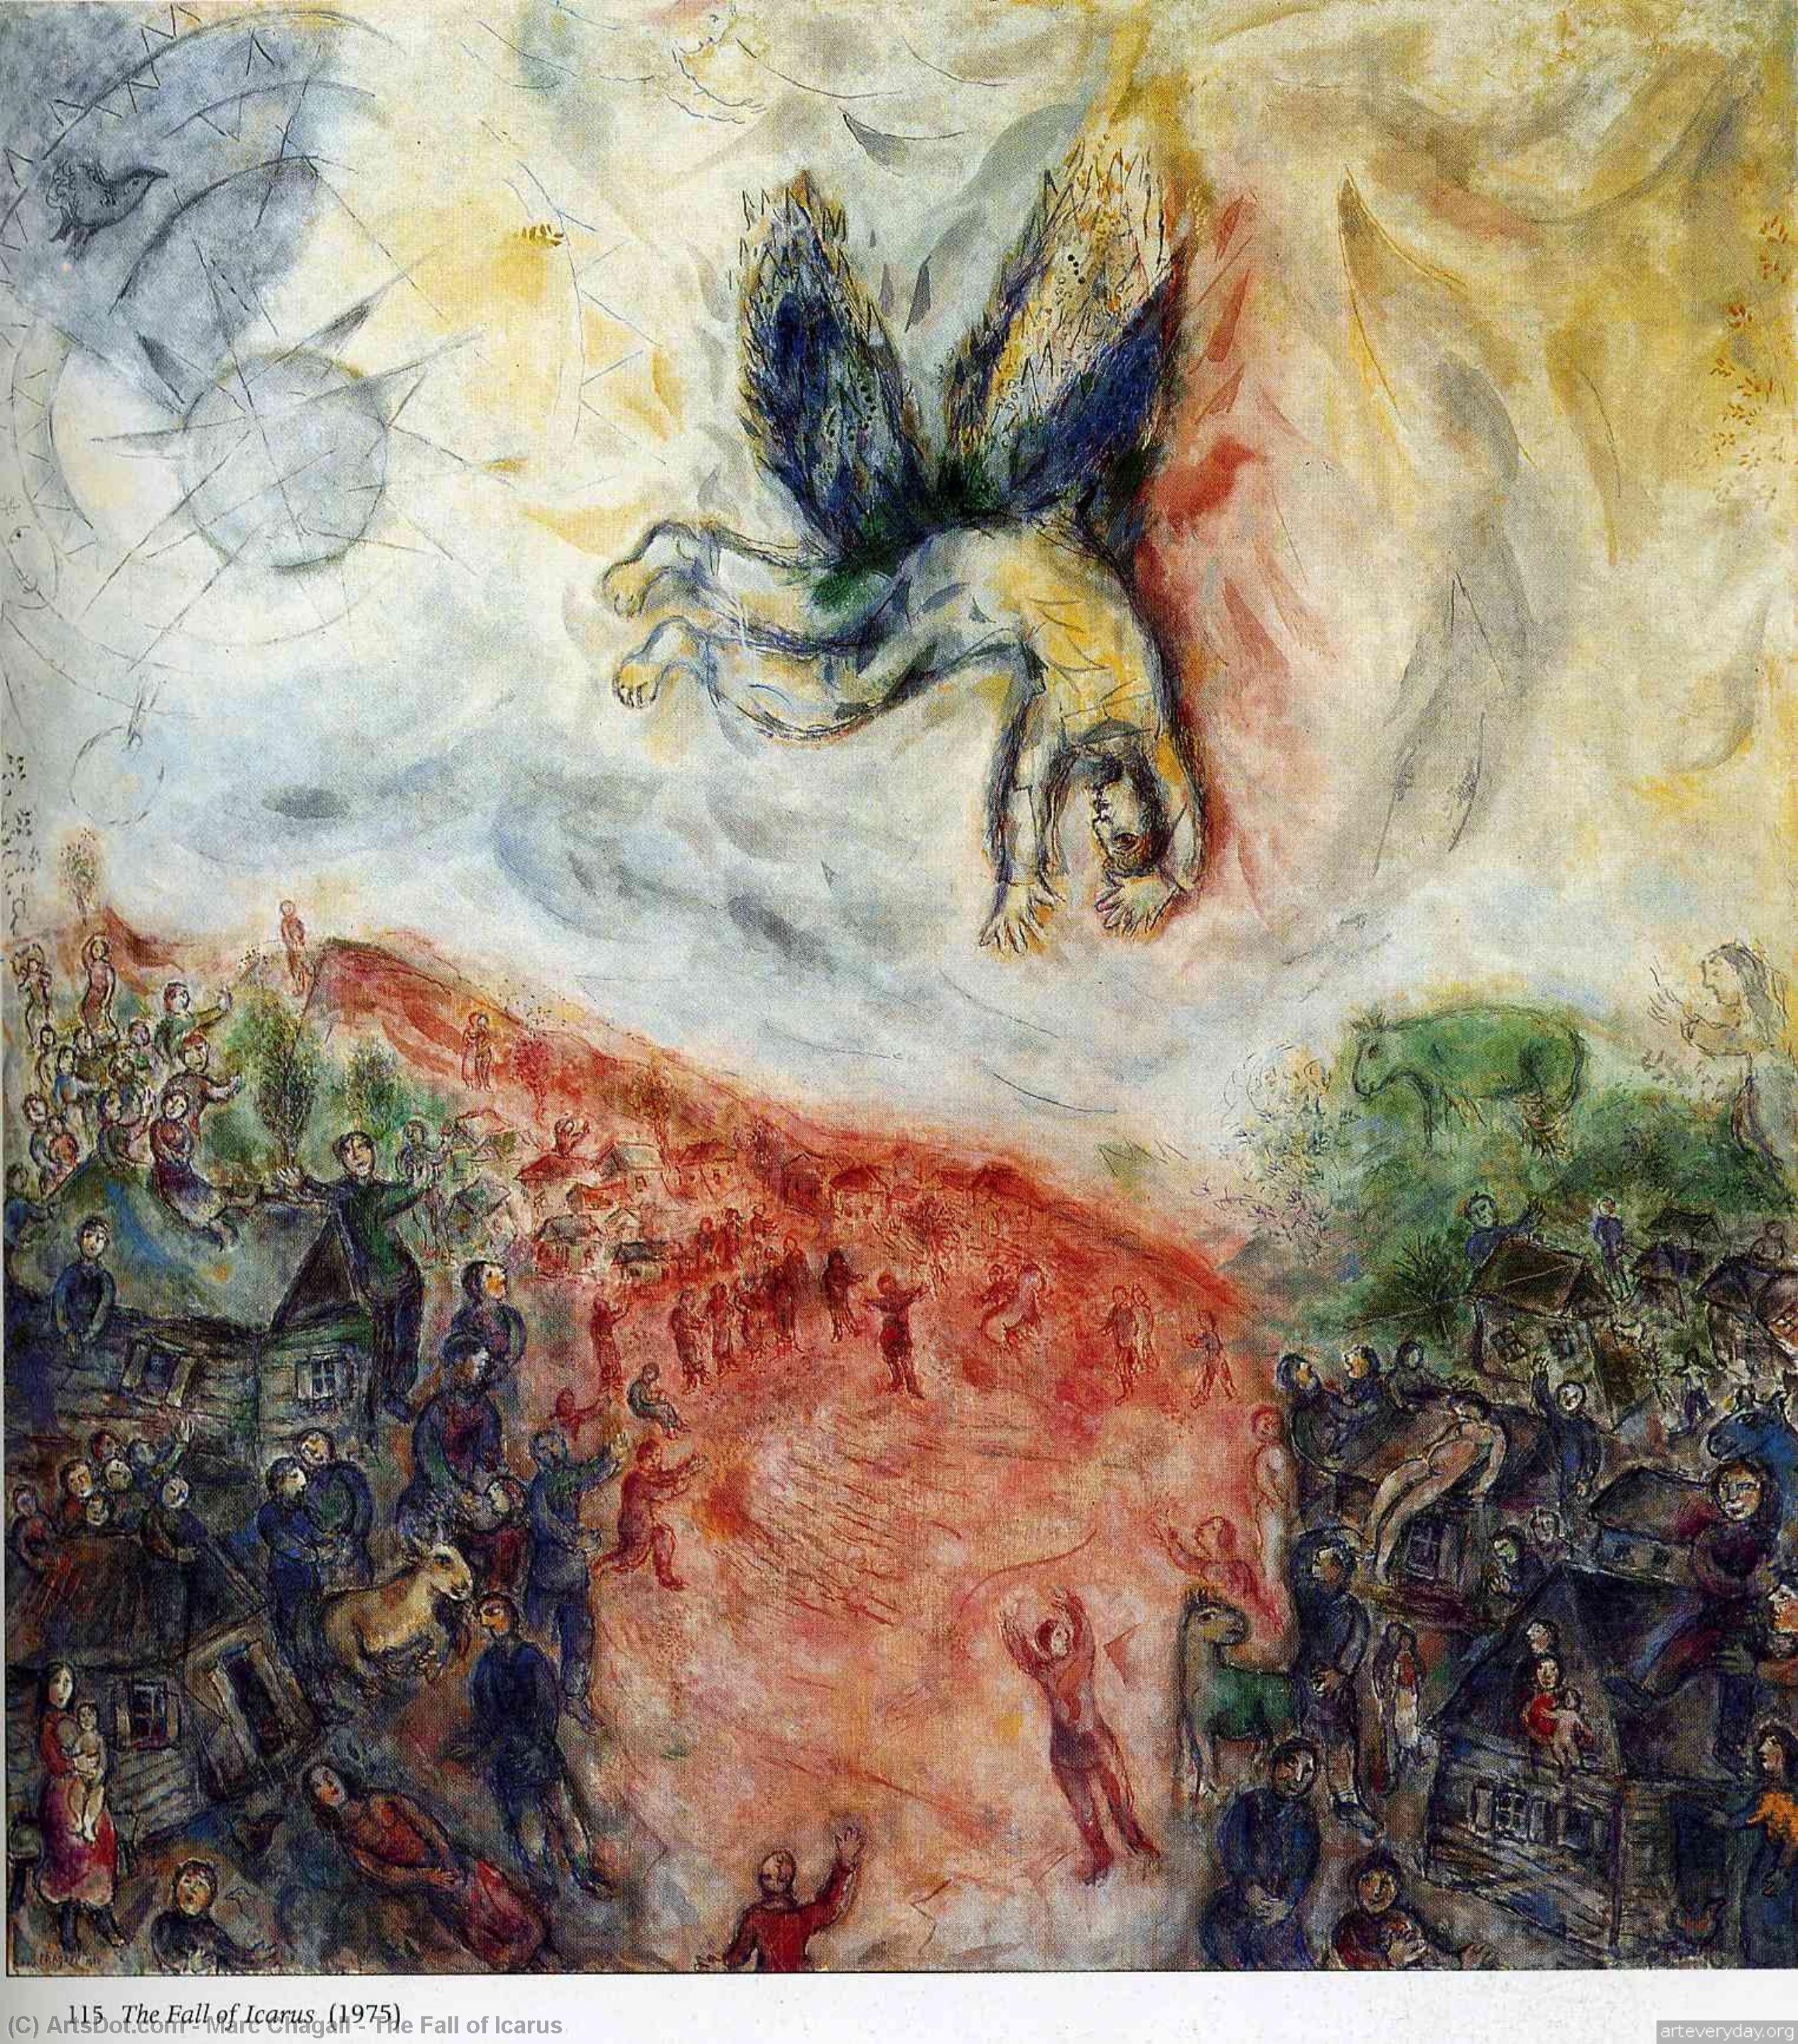 Kauf Museum Kunstreproduktionen Der Fall von Icarus, 1975 von Marc Chagall (Inspiriert von) (1887-1985, Belarus) | ArtsDot.com